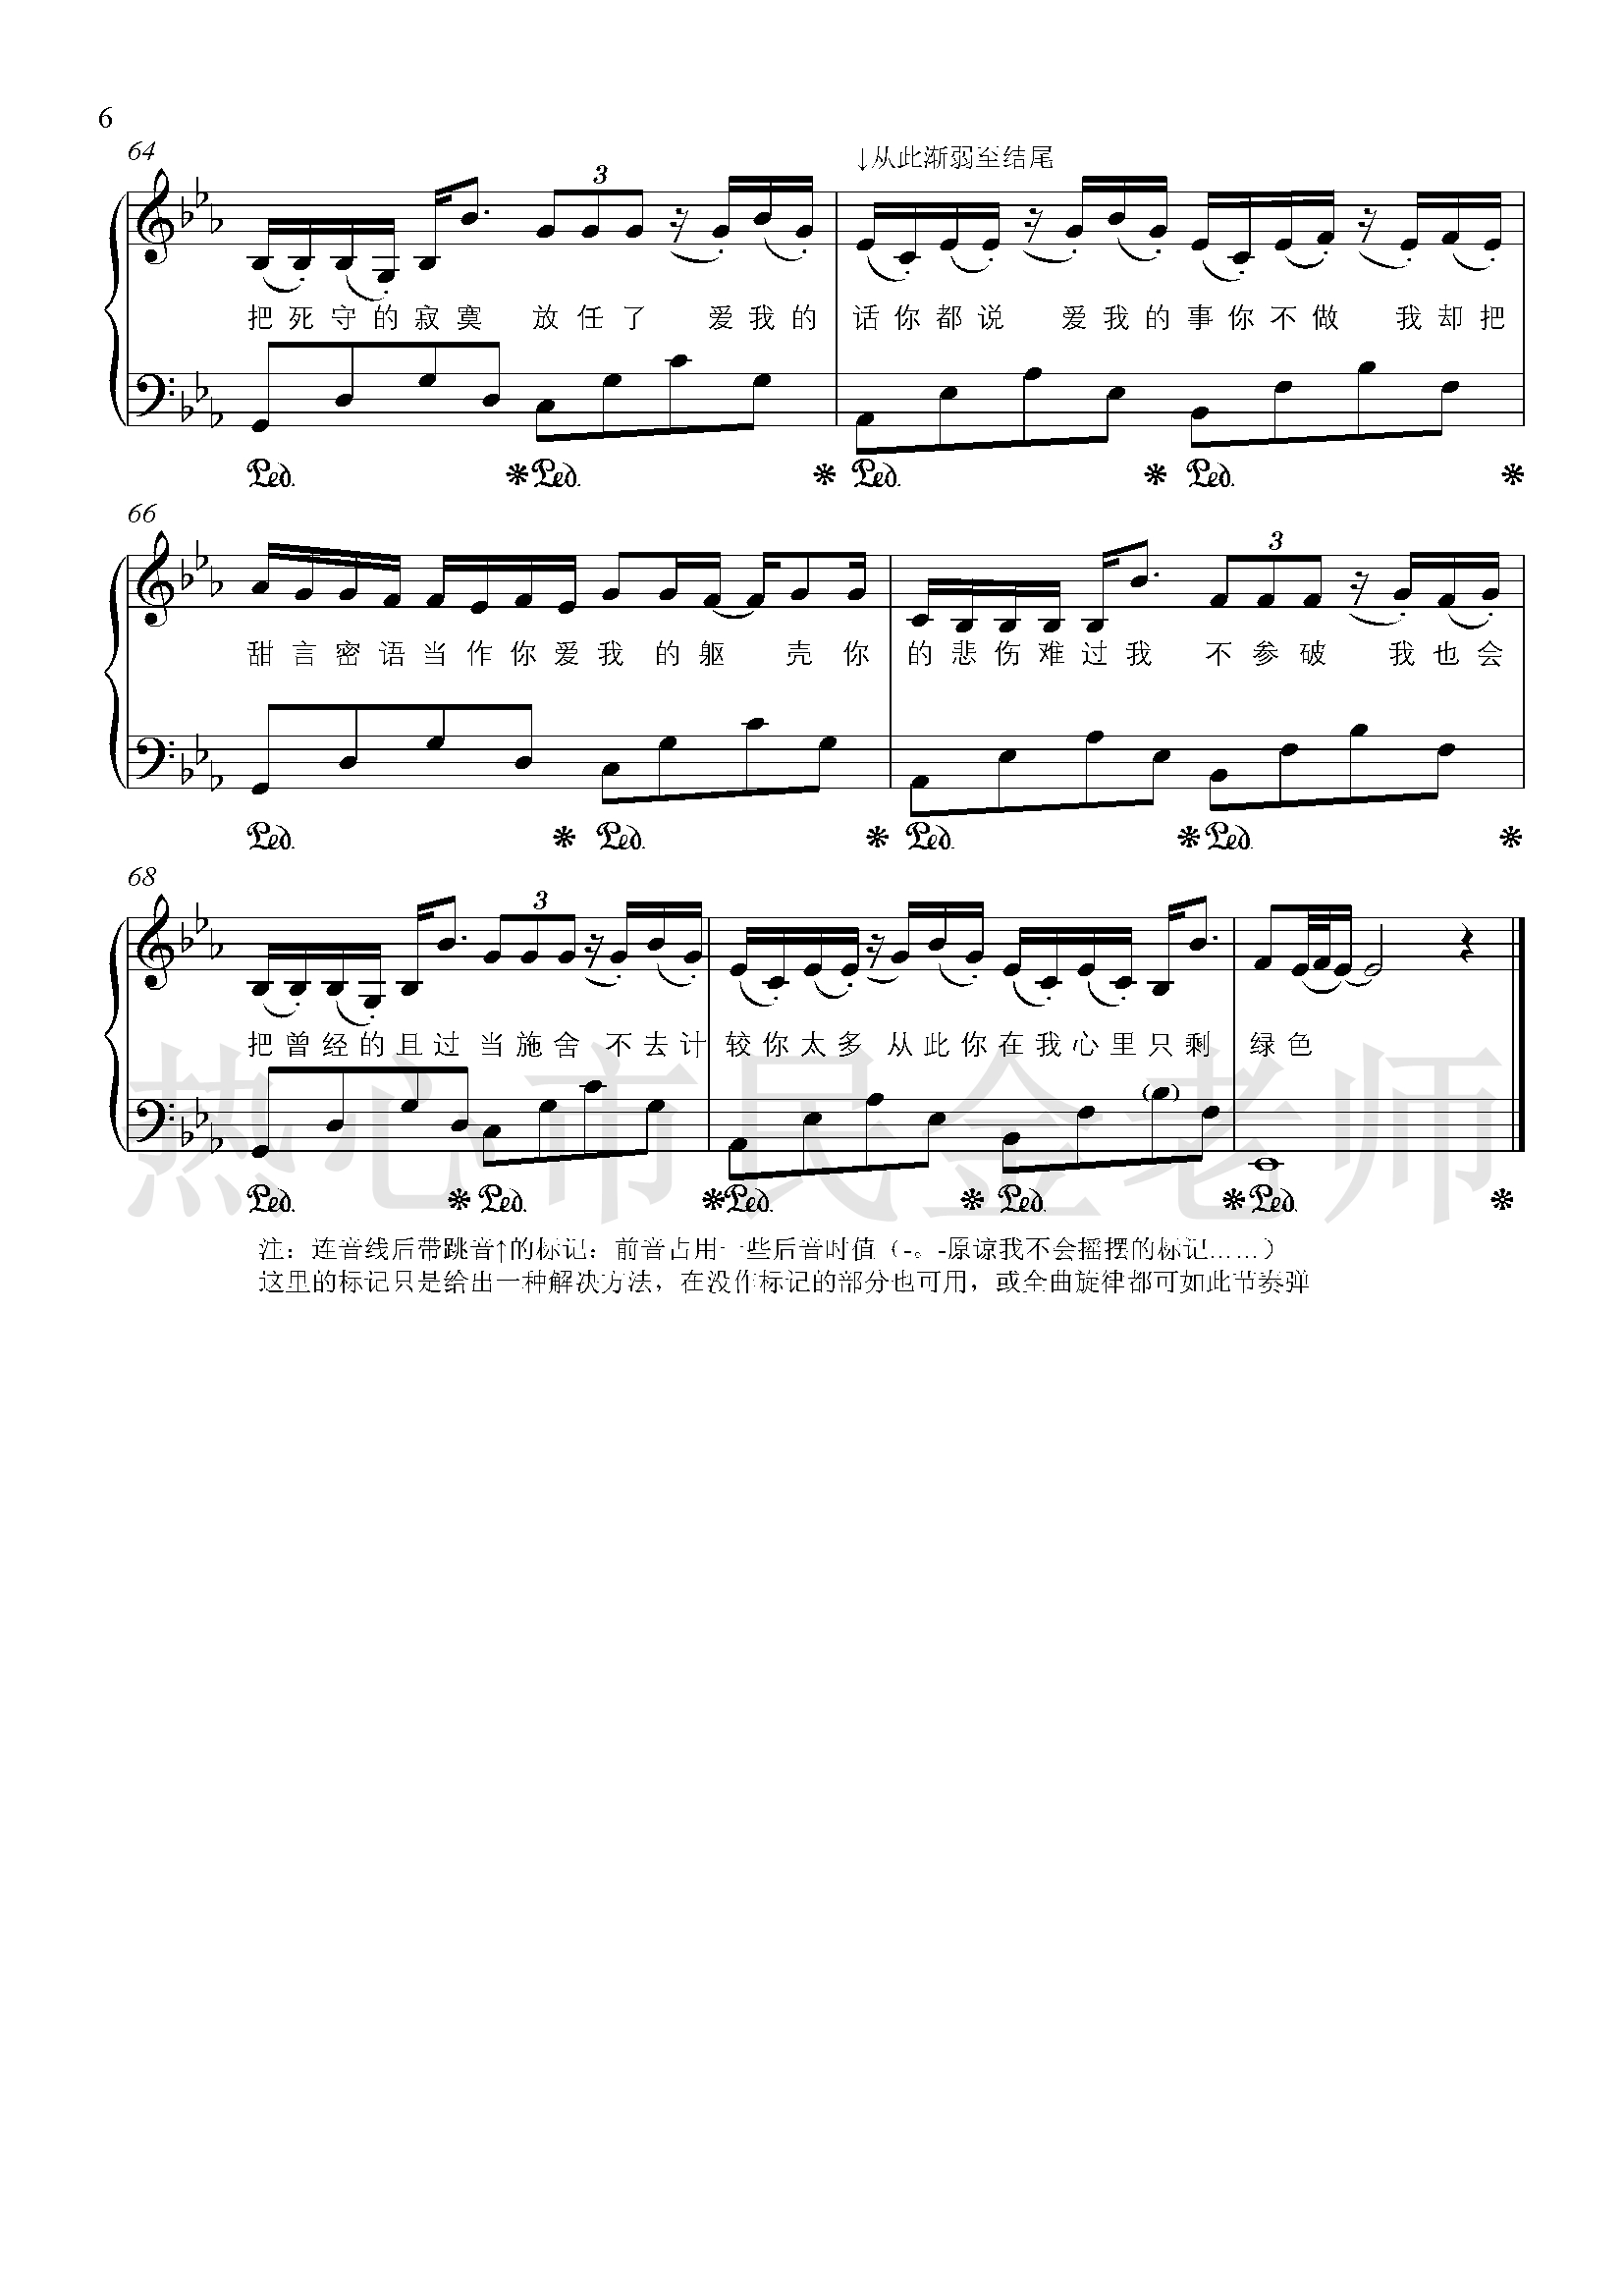 绿色钢琴谱-金老师独奏1904116